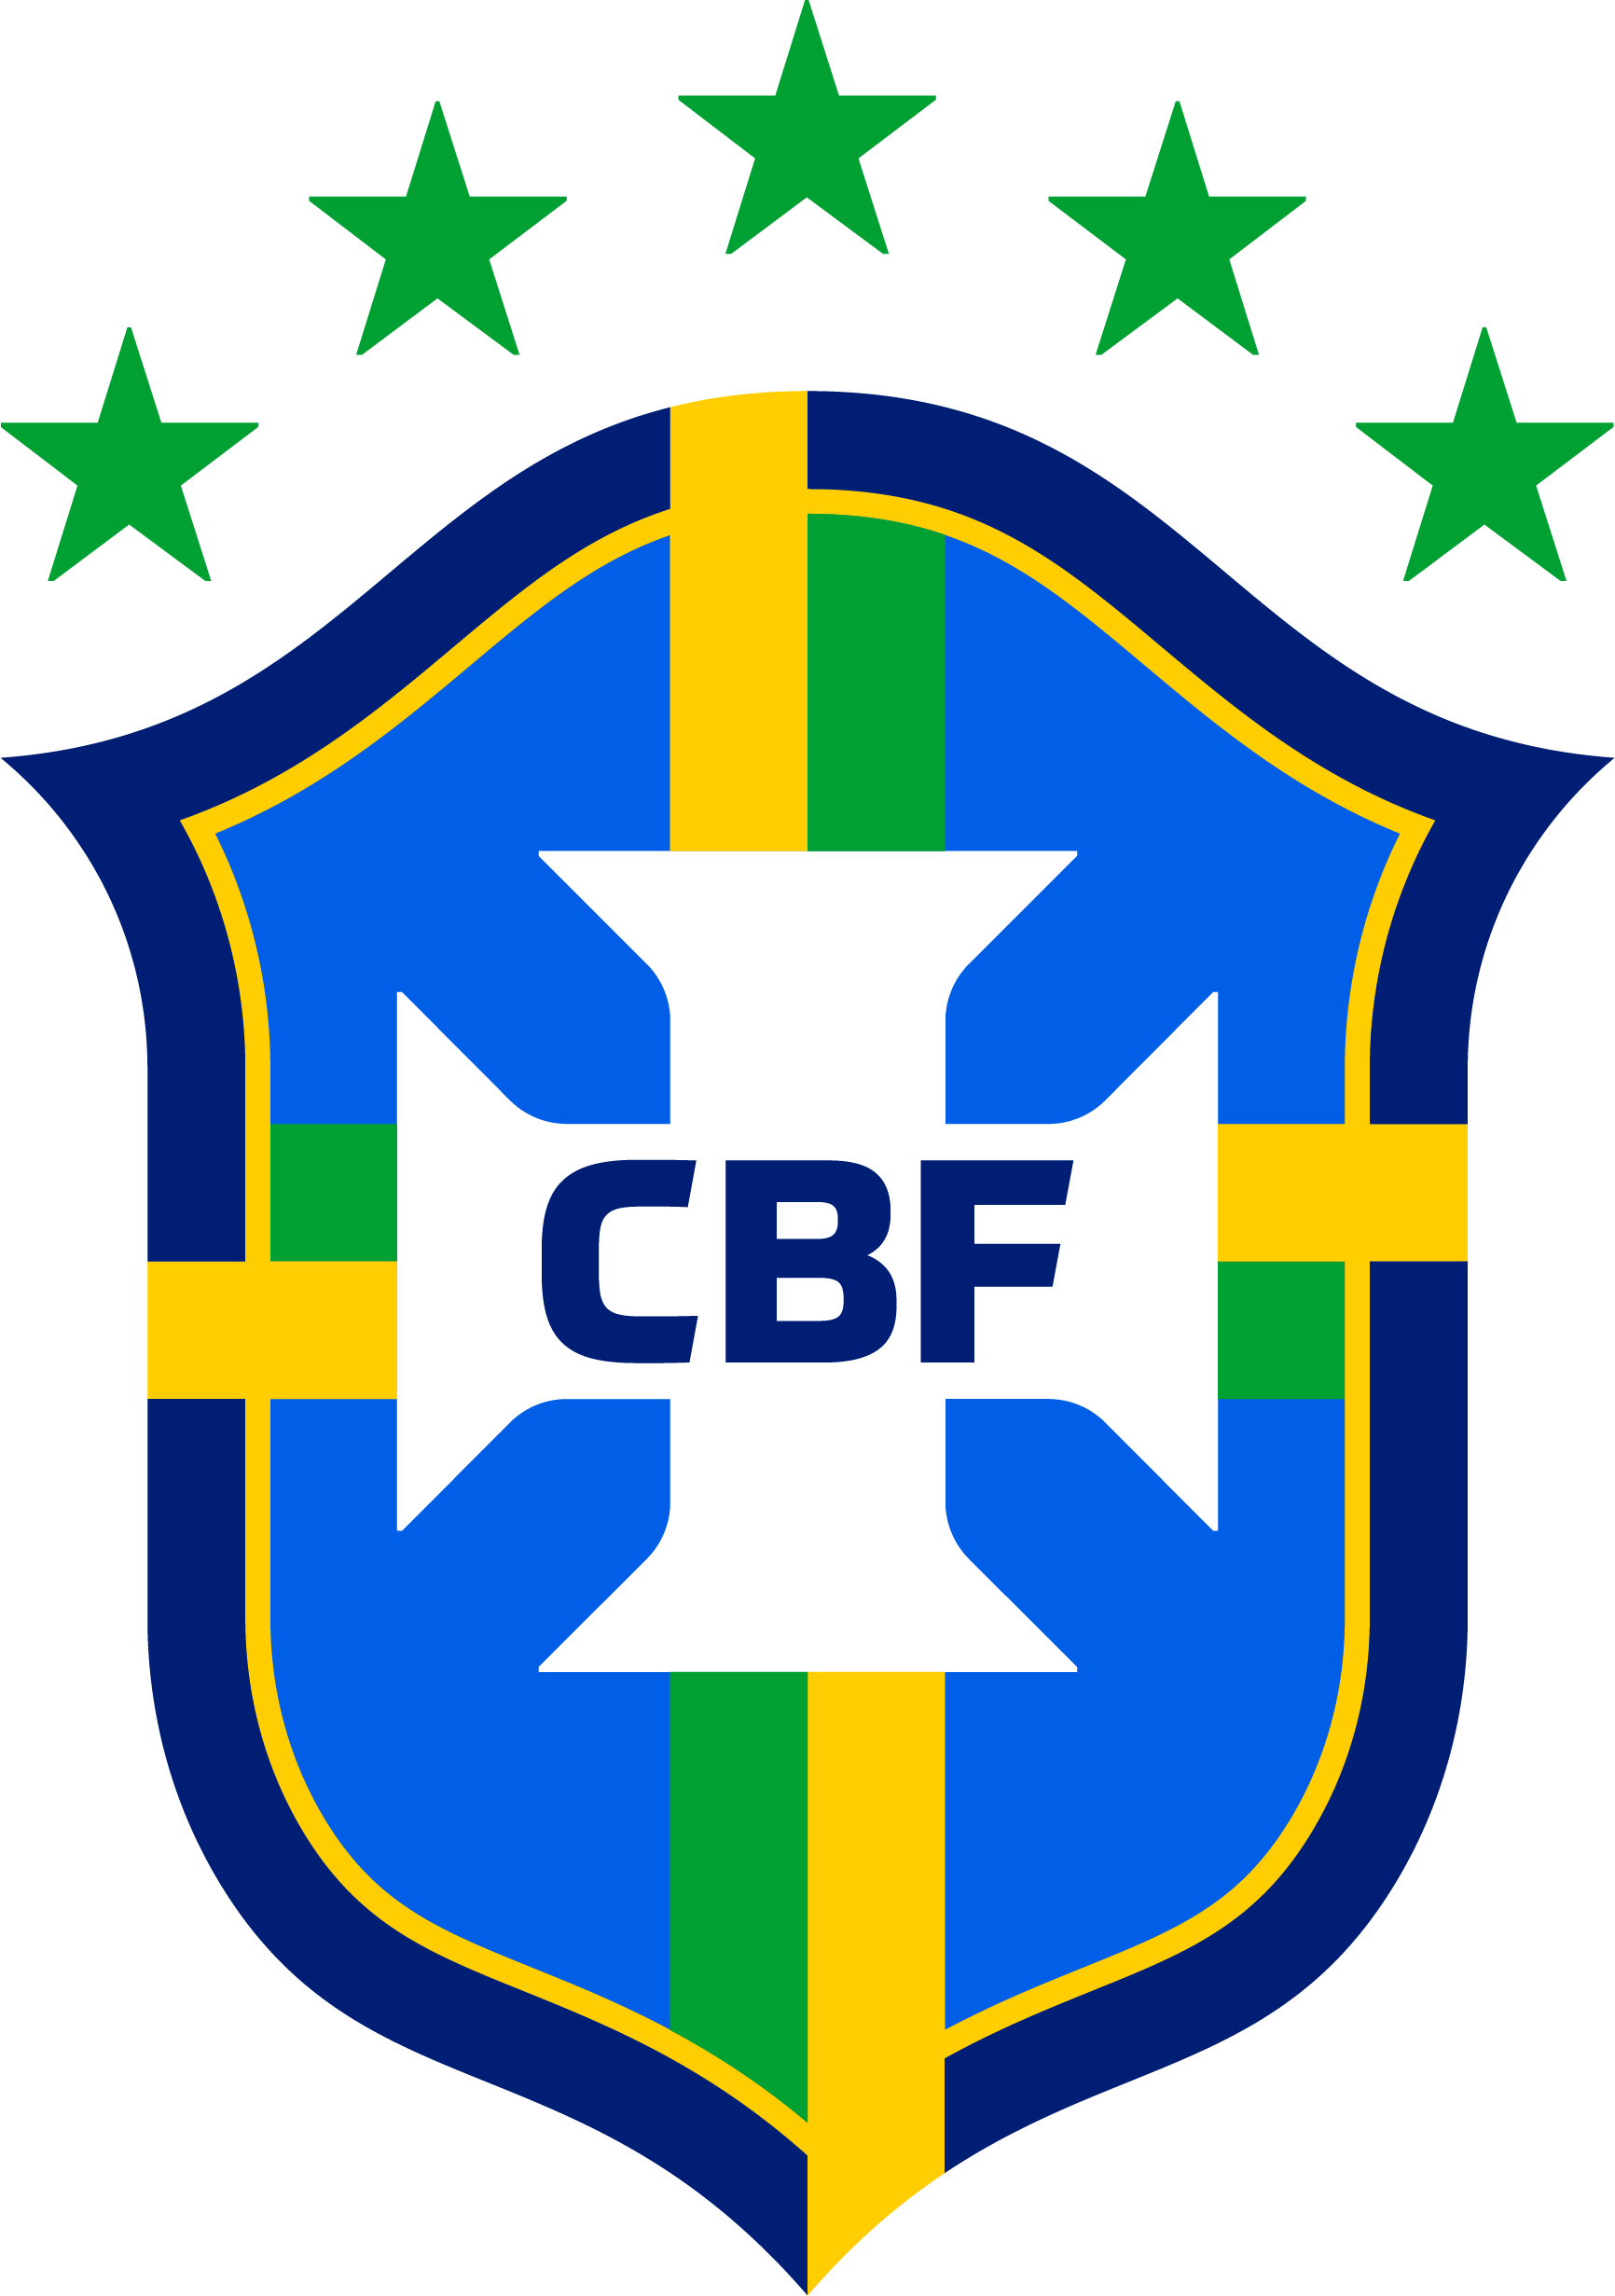 CBF - Confederación Brasileña de Fútbol